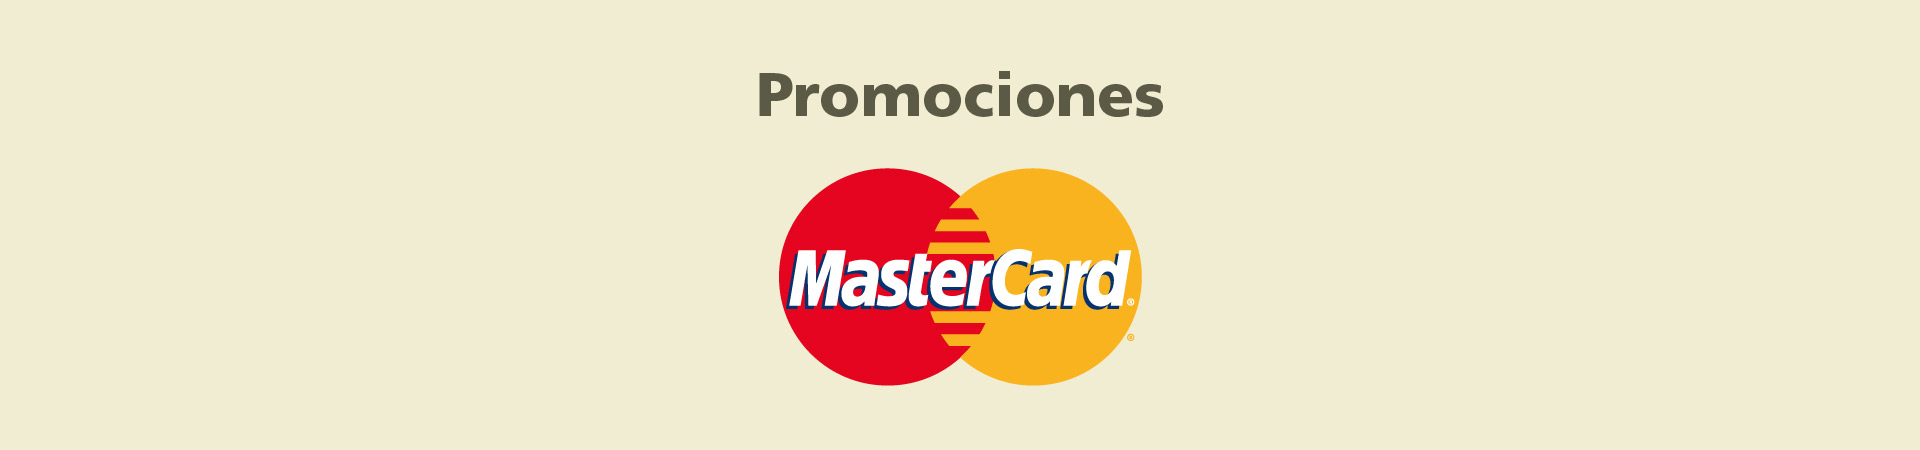 Promociones MasterCard